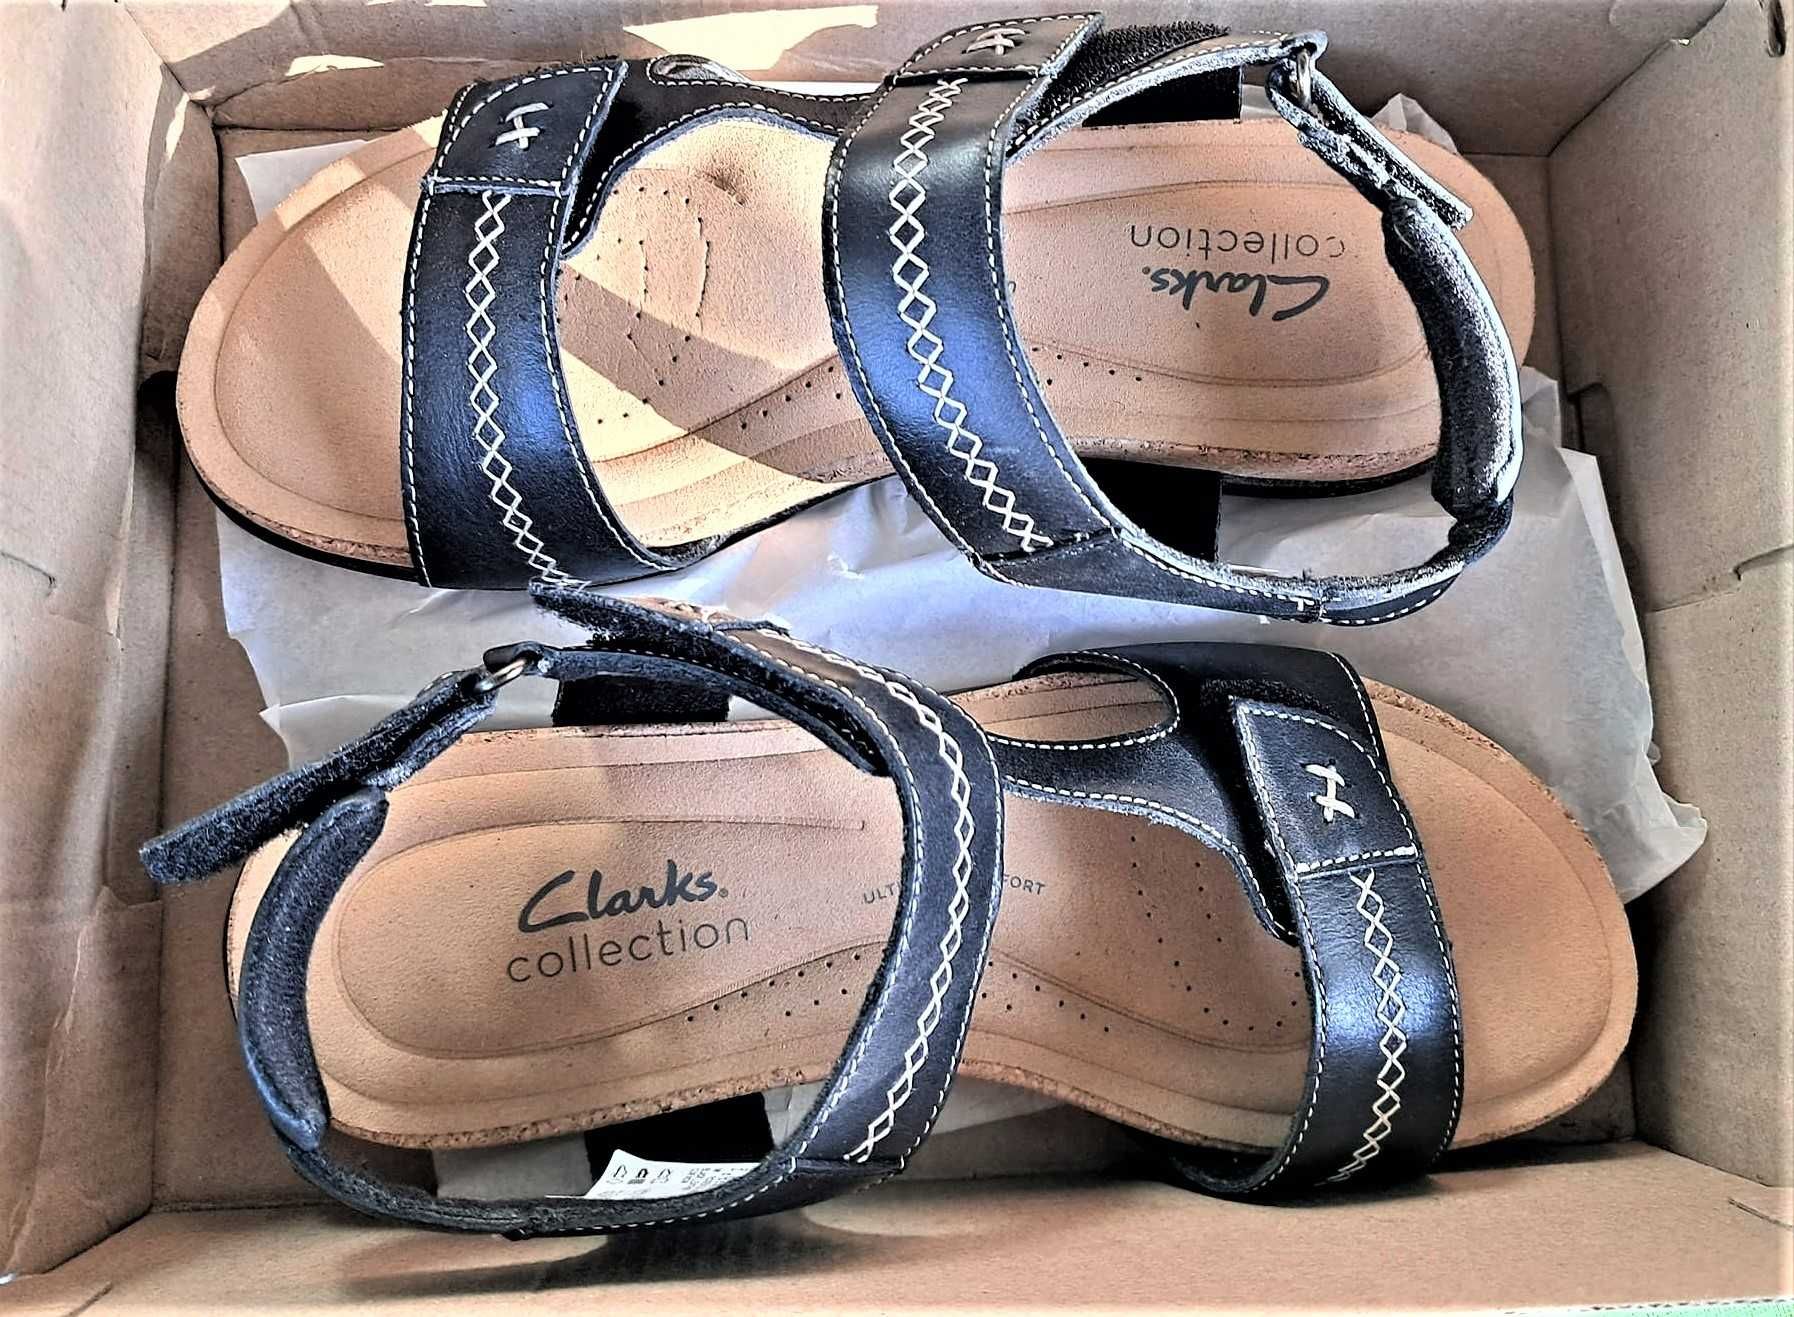 Skórzane sandały Clarks regulowane zapięcia r. 39-39,5 nowe